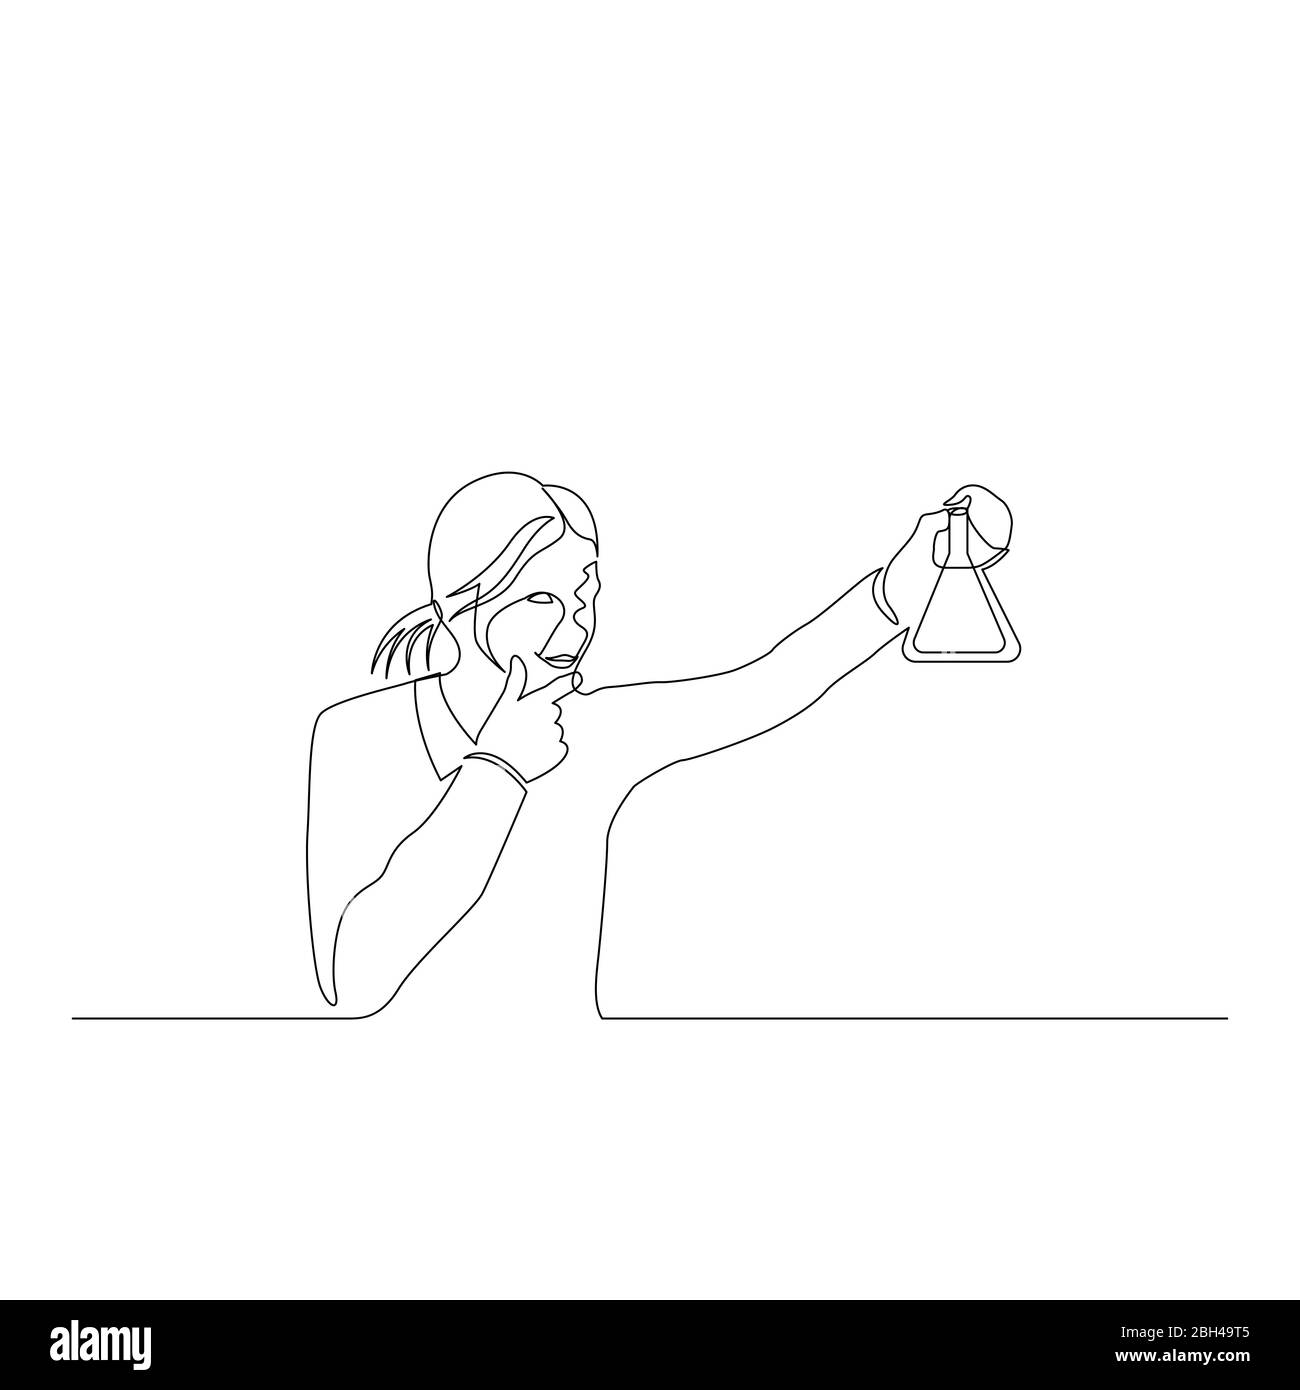 Une ligne continue femme chimiste regarde soigneusement la fiole dans sa main. Illustration du stock vectoriel. Illustration de Vecteur